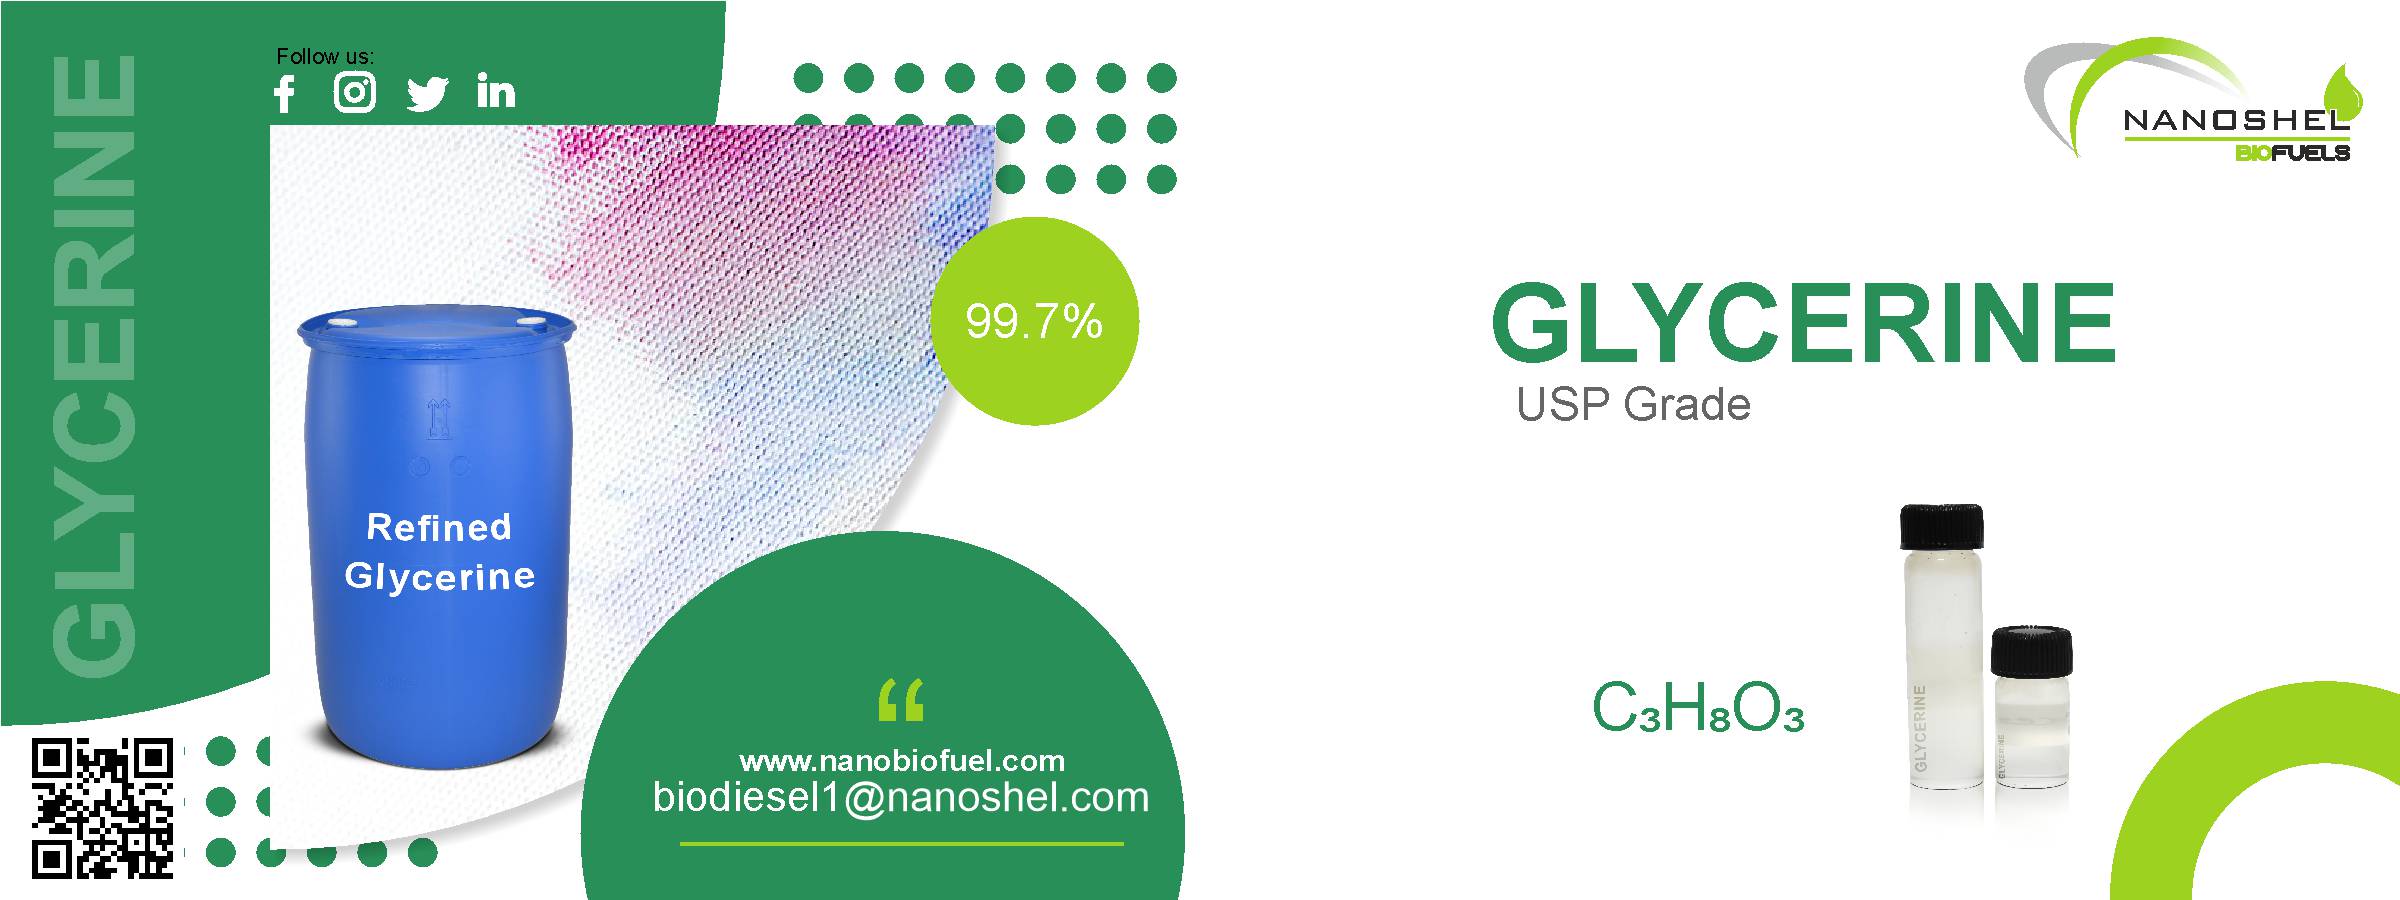 Glycerin USP Grade